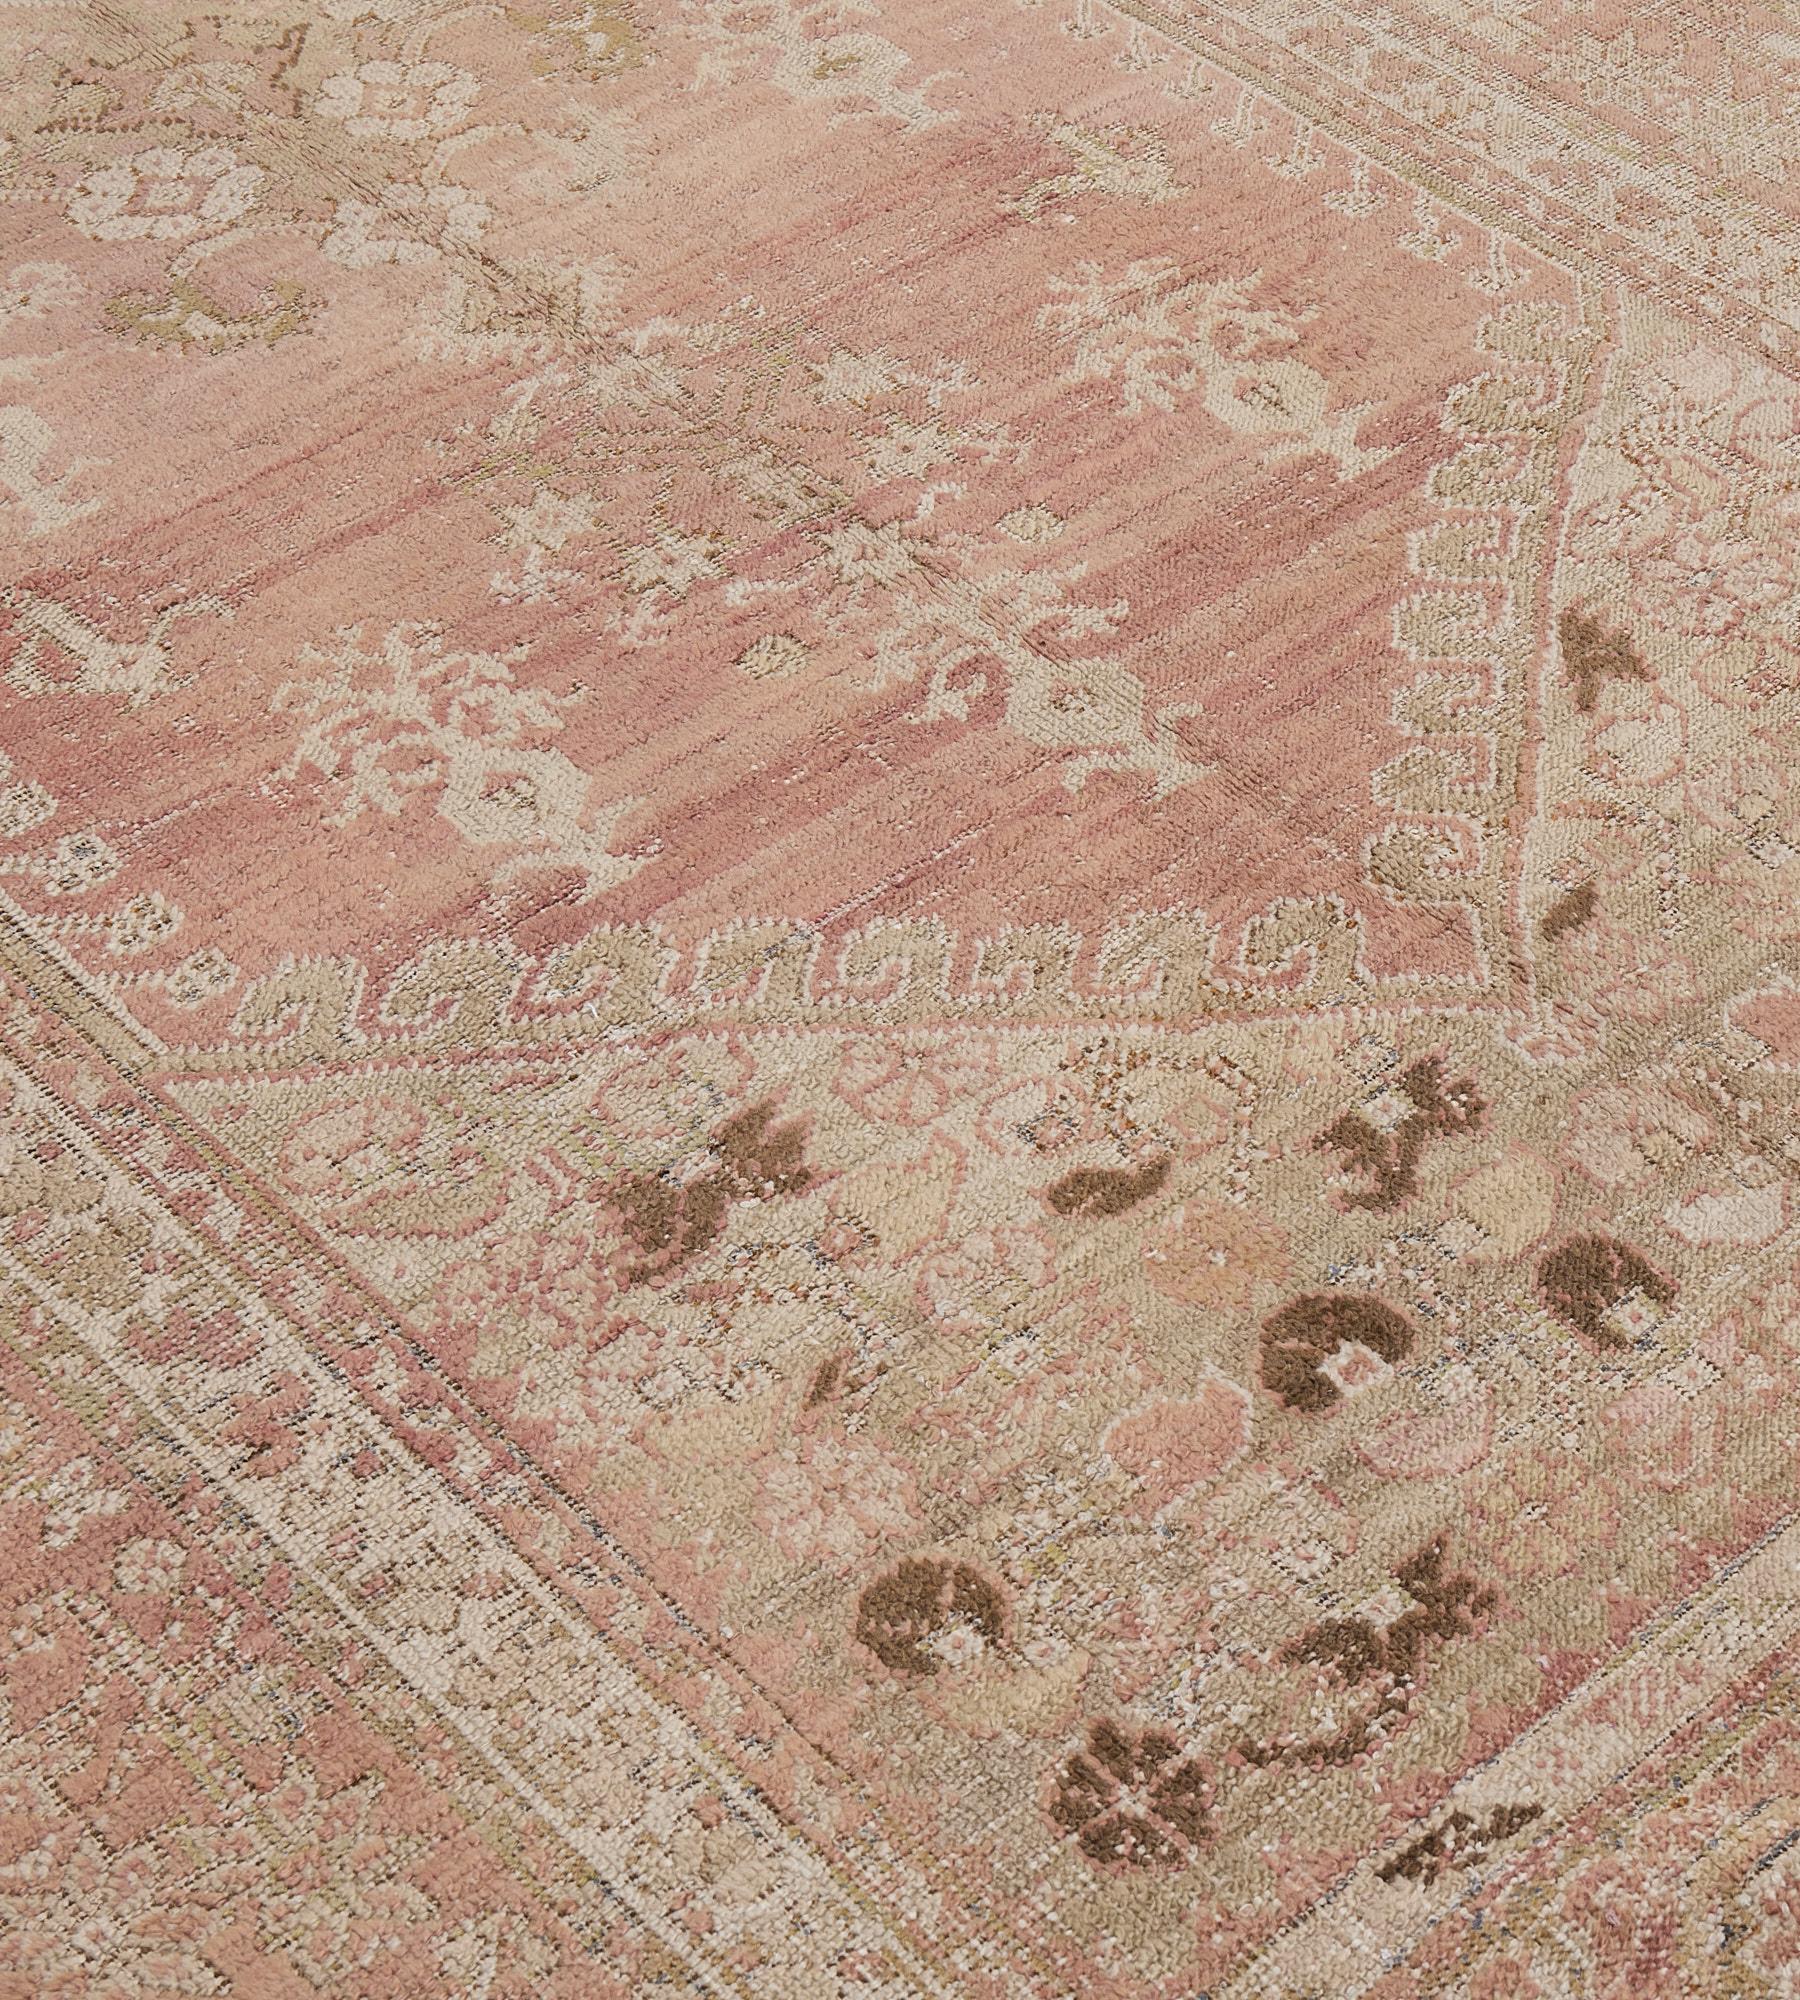 Dieser antike Ghordes-Teppich (um 1880) hat ein helles, lachsfarbenes Feld mit einer zentralen, kreuzförmigen, offenen Raute, die von einer Vielzahl floraler Motive umgeben ist, und einem äußeren Band aus elfenbeinfarbenen Rosetten mit blühenden